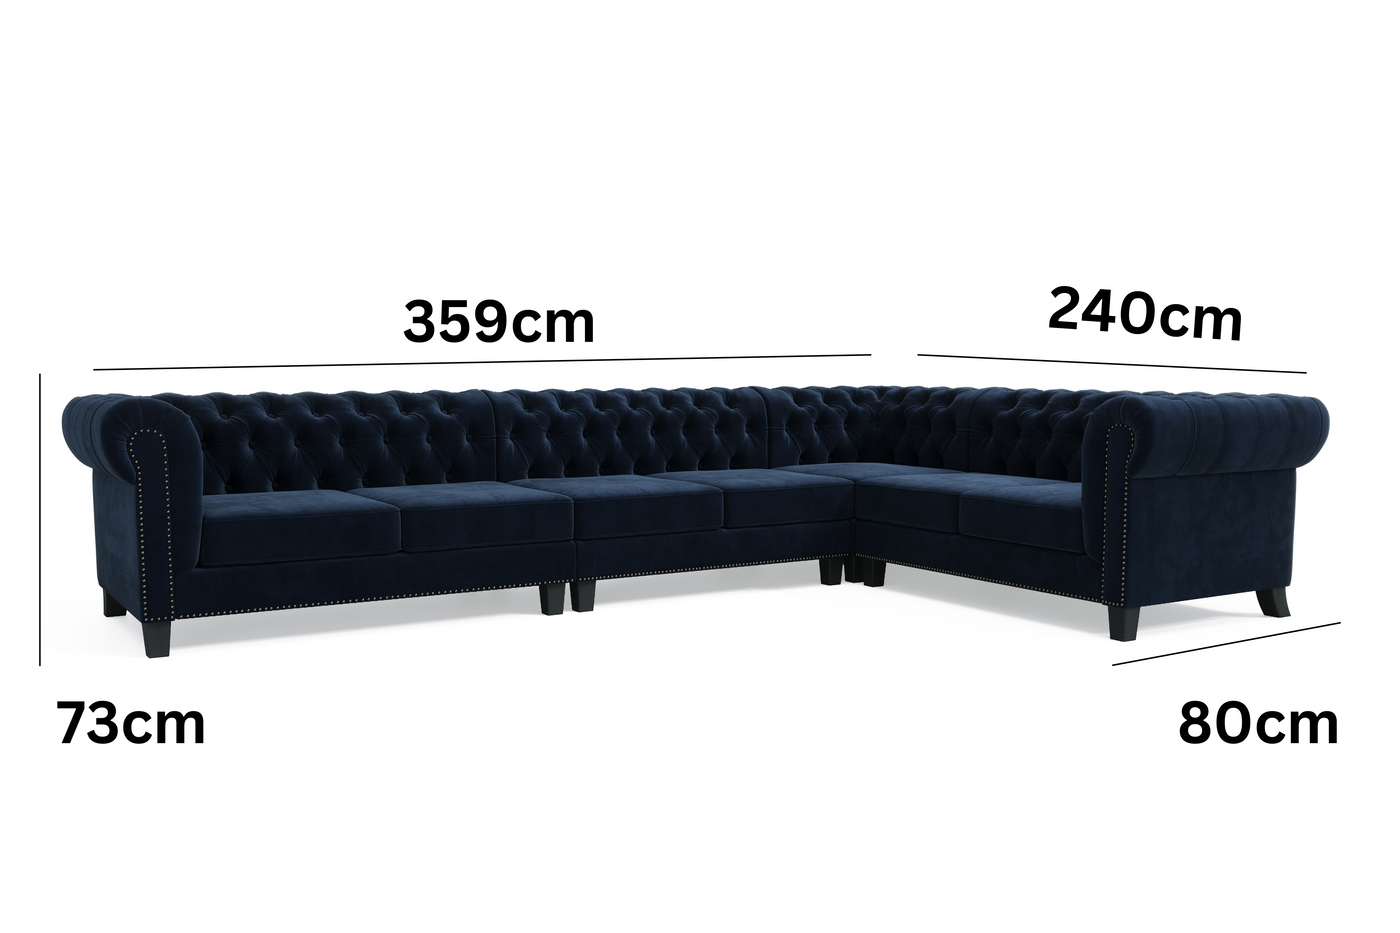 Paris 7 Seater Chesterfield Corner Sofa (Navy Blue Velvet) (7913190981886)